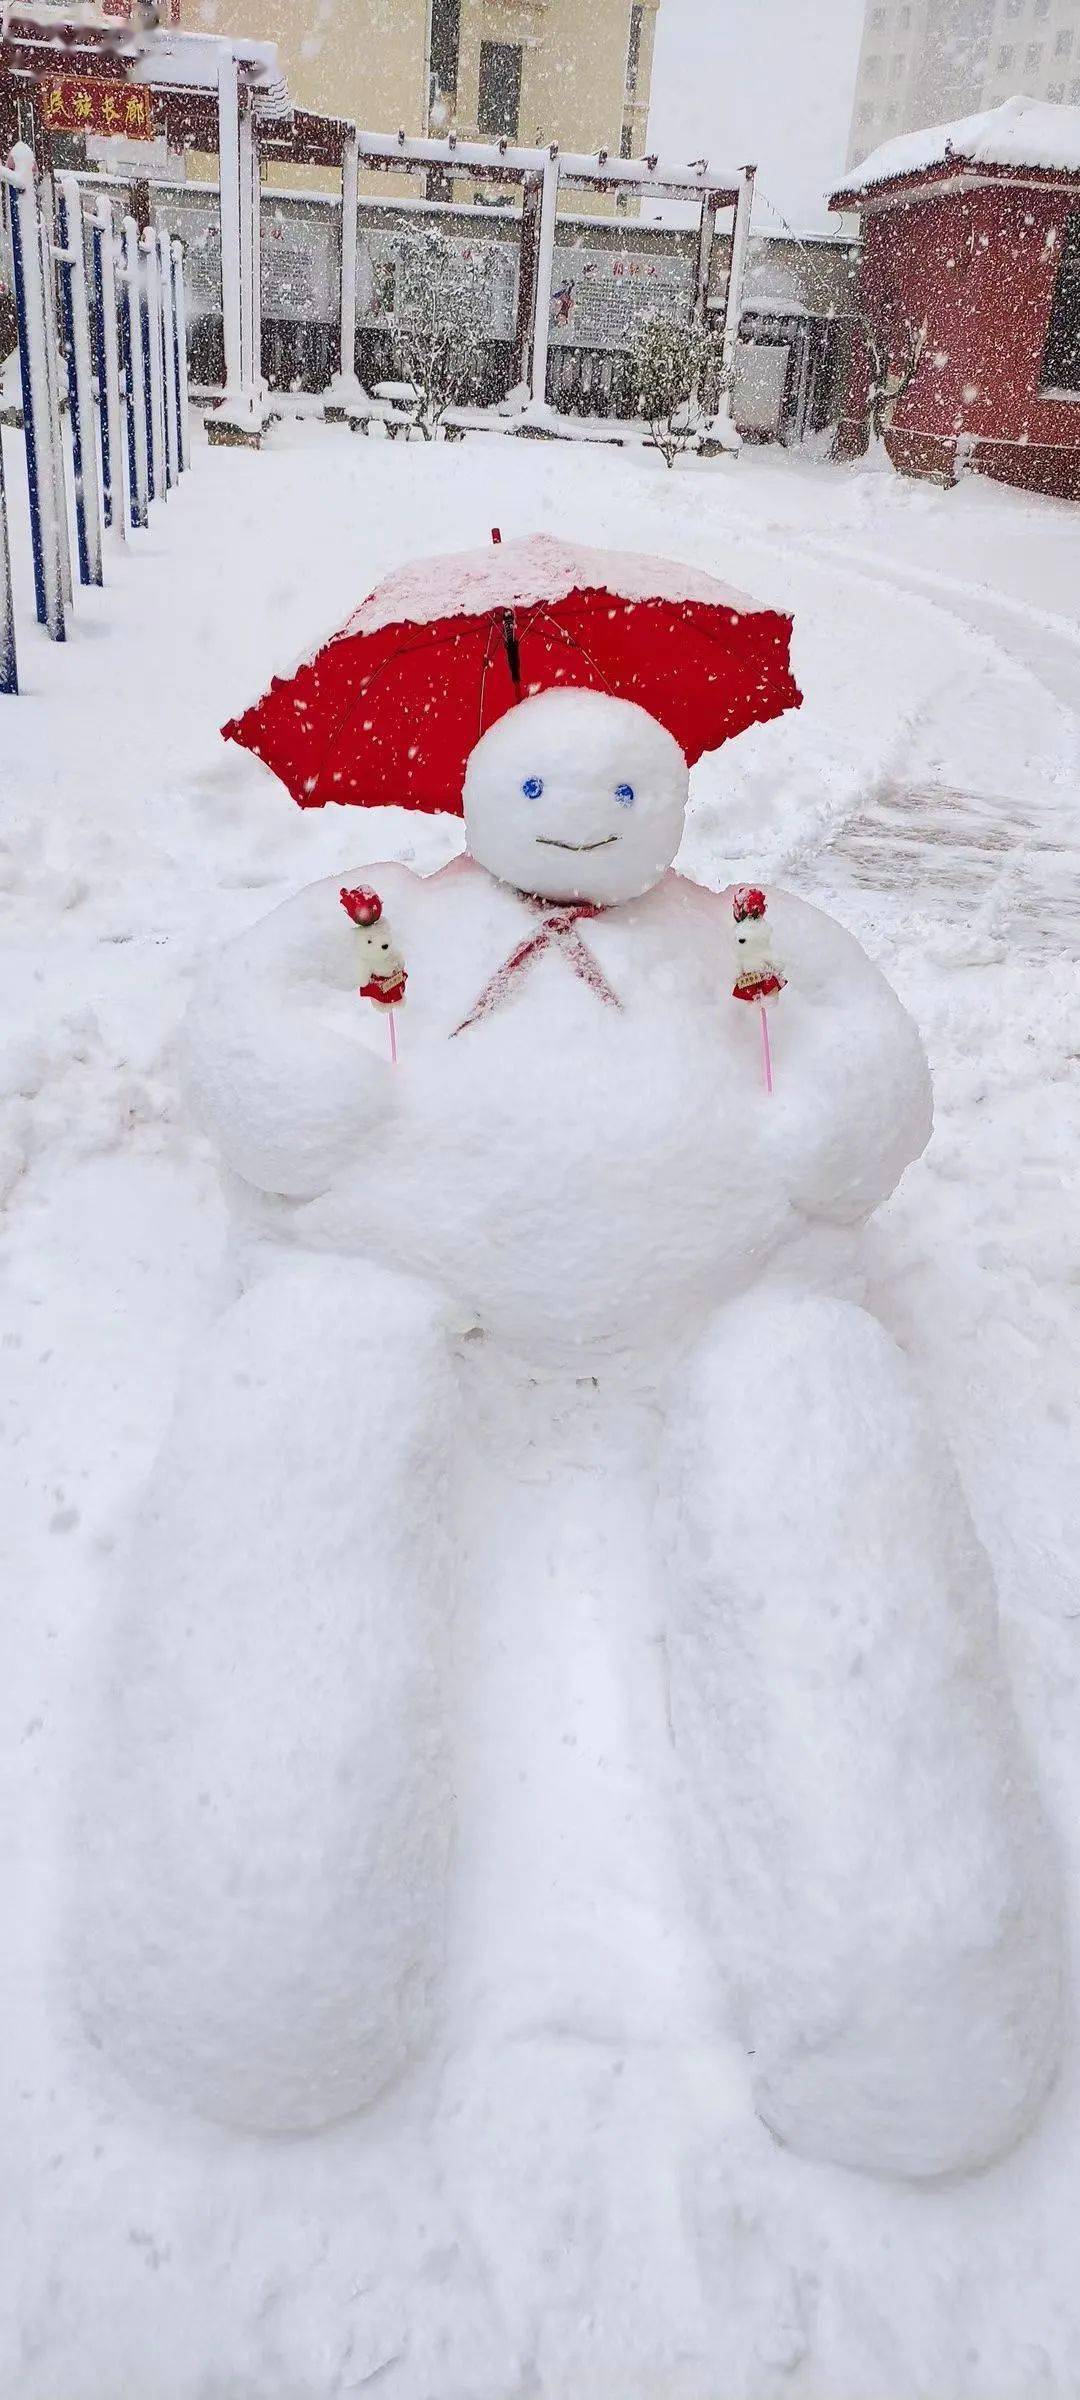 暴风雪后,威海雪景美如画,还有可爱雪人